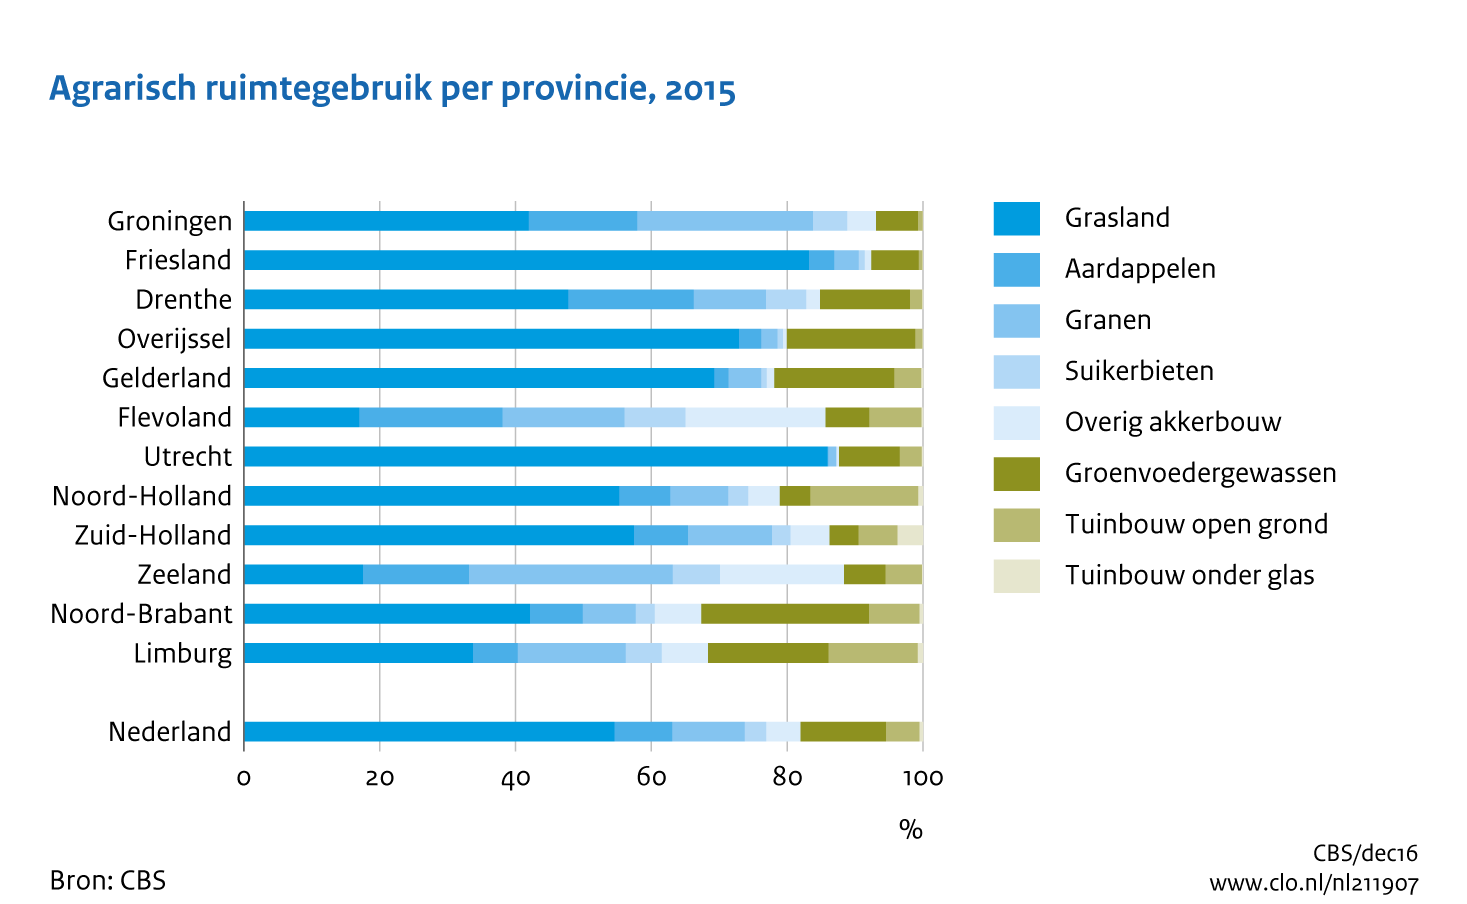 Figuur  Agrarisch ruimtegebruik per provincie, 2015. In de rest van de tekst wordt deze figuur uitgebreider uitgelegd.